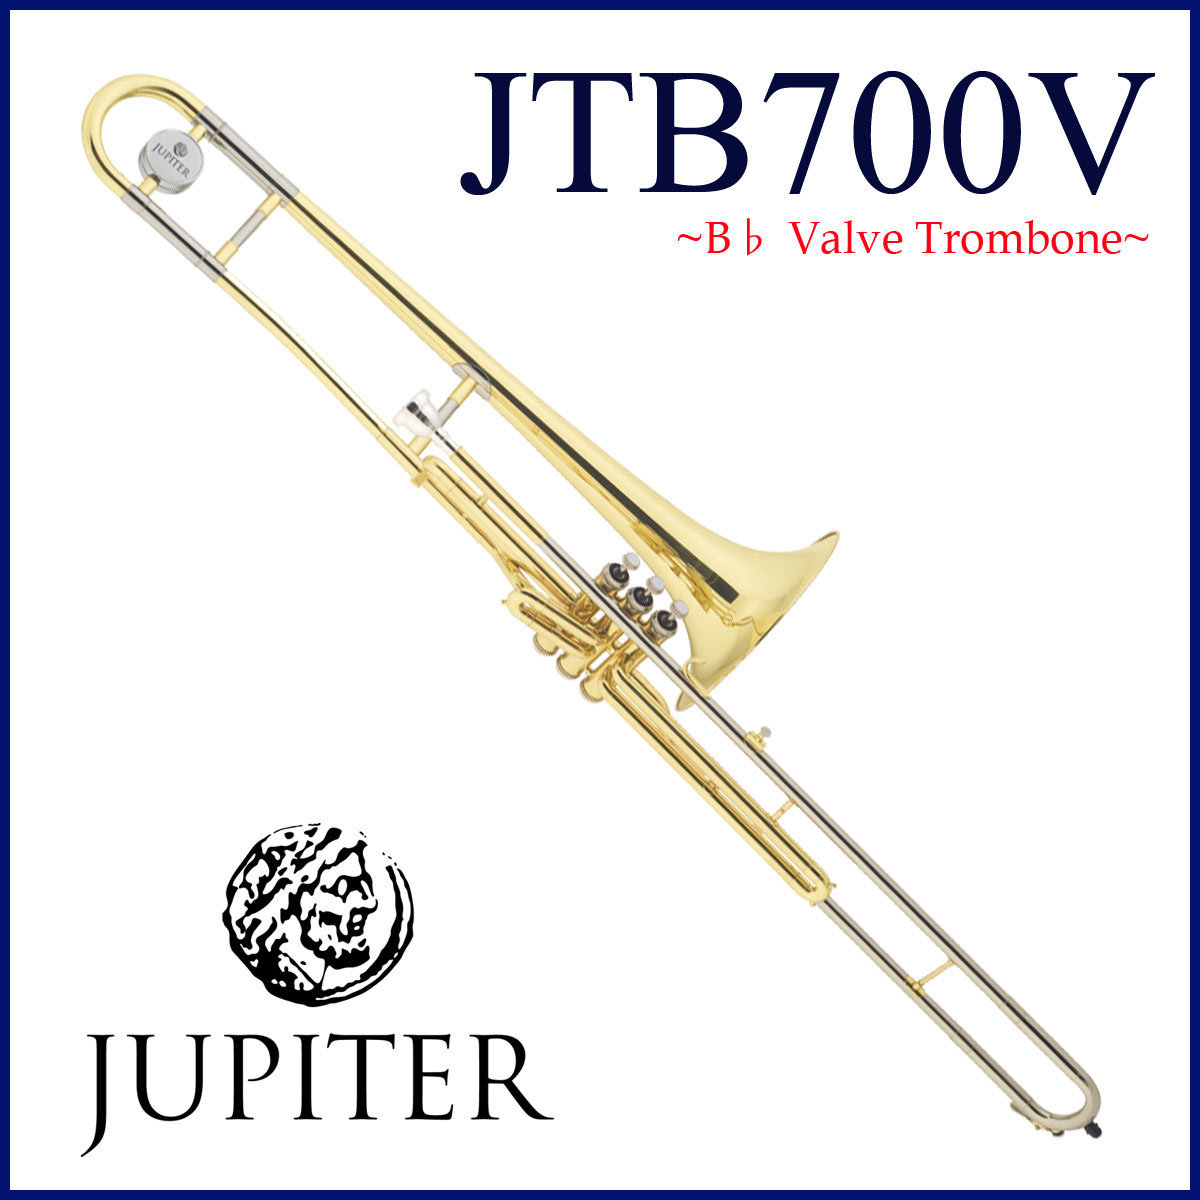 JUPITER ジュピター トロンボーン - 管楽器